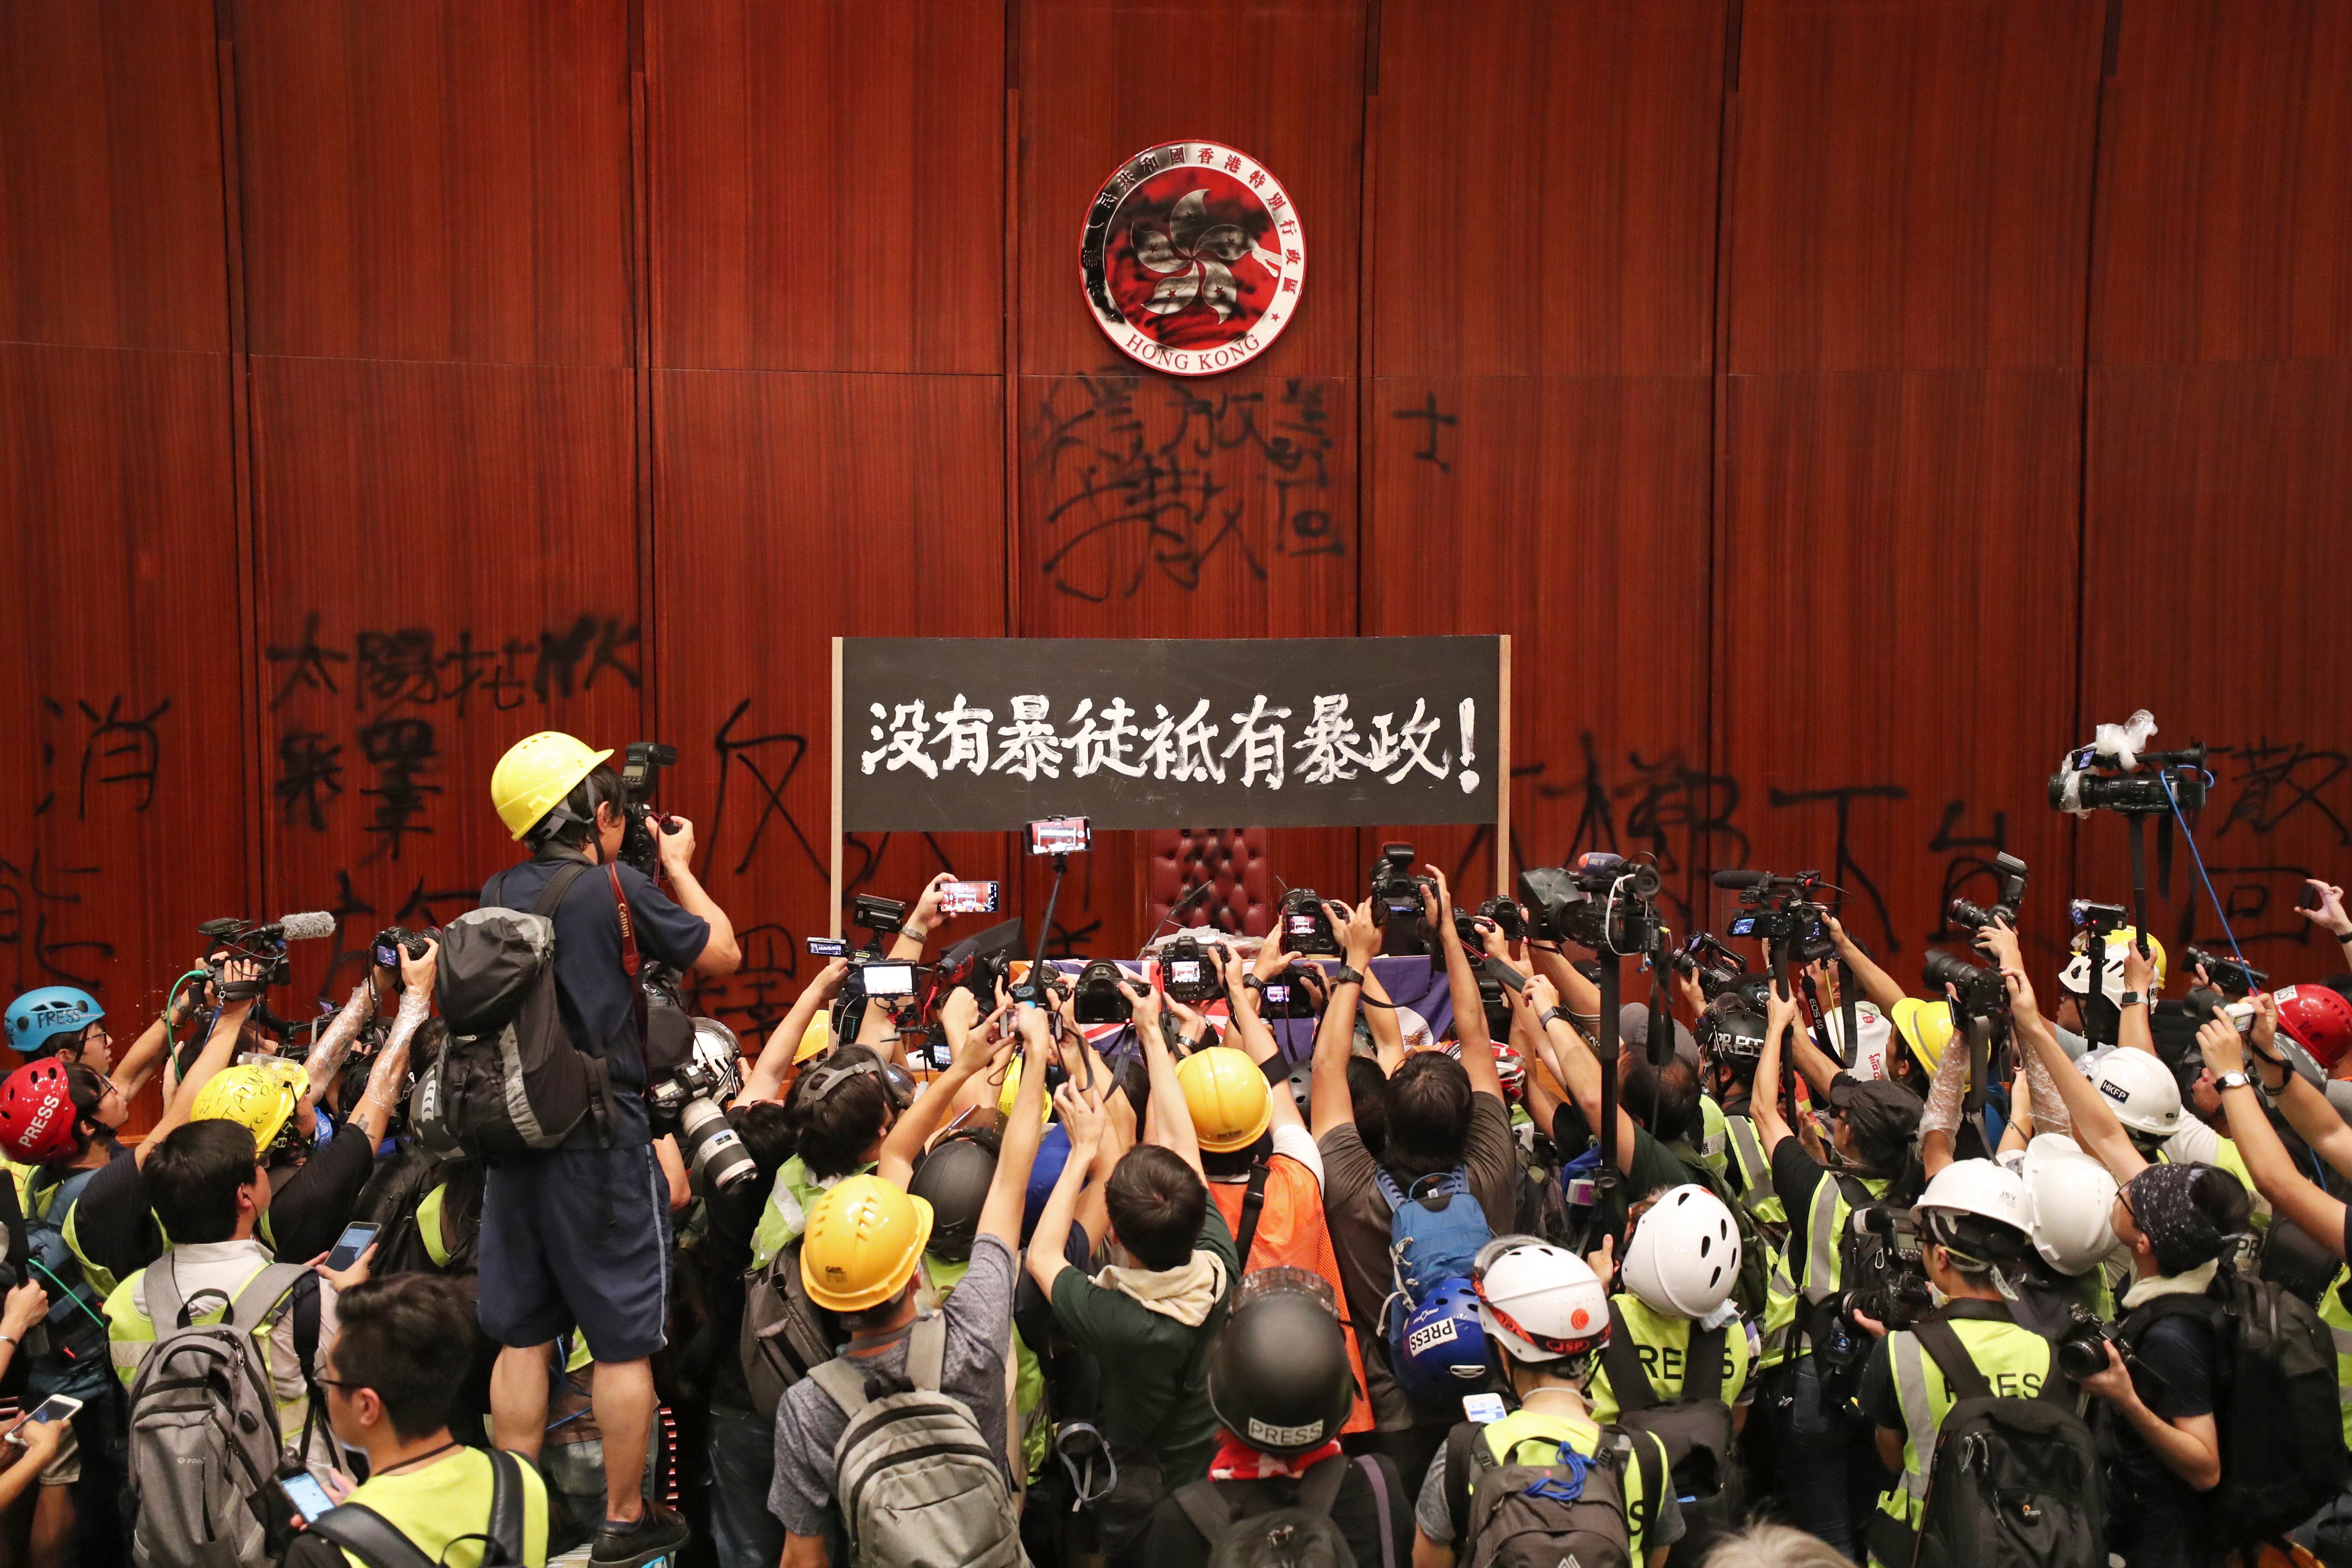 Демонстранти срещу пропекинското правителство нахлуха в сградата на парламента в полуавтономната територия Хонконг в понеделник вечерта и развяха знамето от епохата на британския колониализъм, след като щурмуваха зданието в деня на годишнината от връщането на територията на Китай.